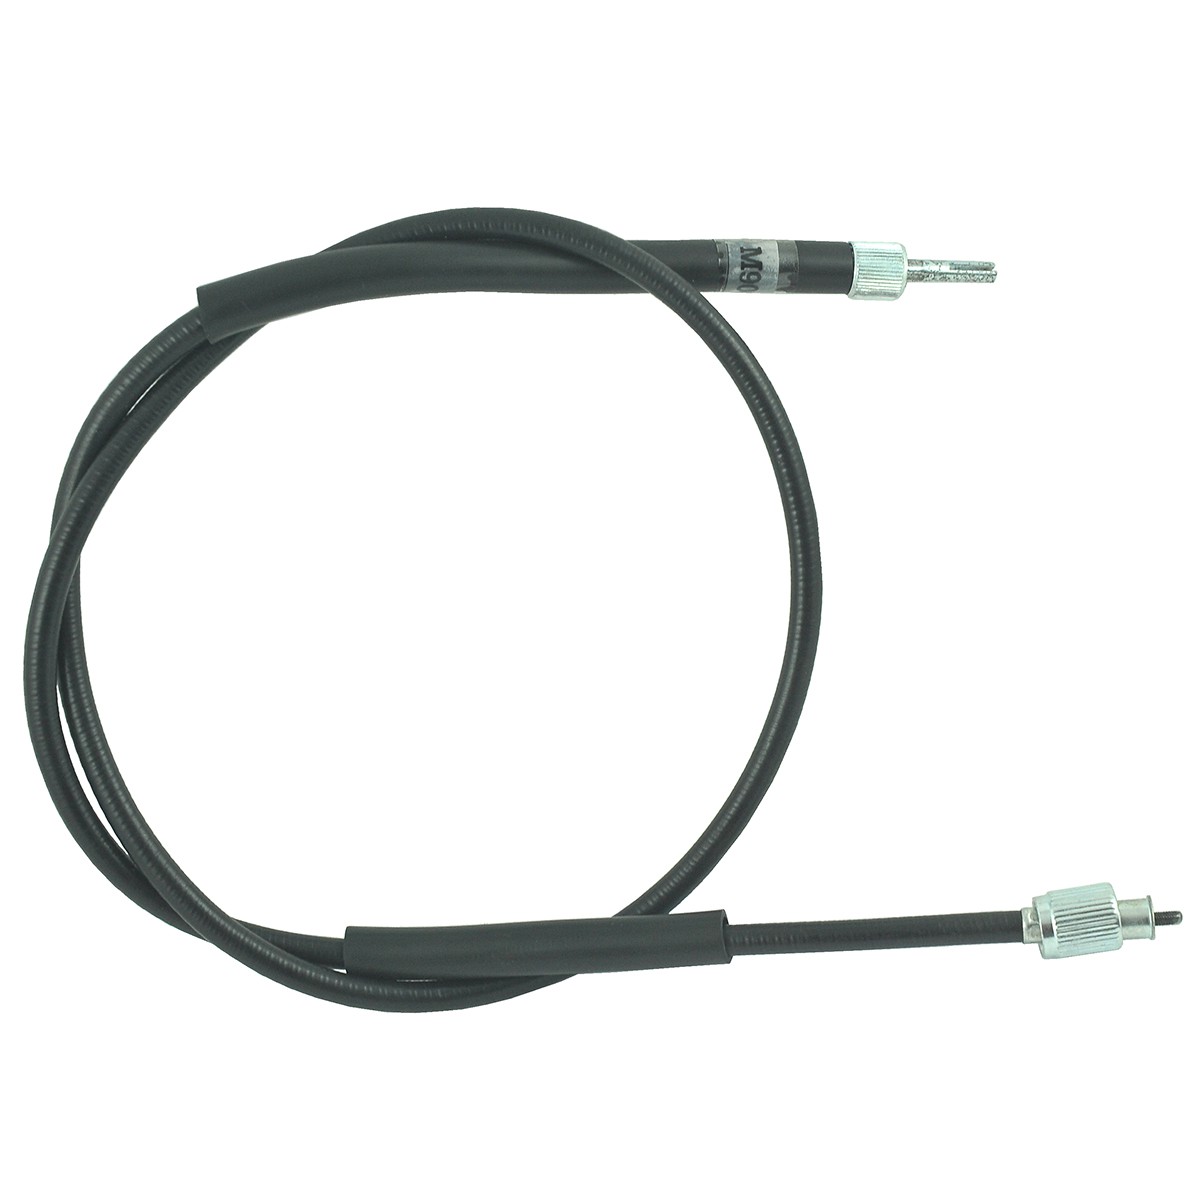 Cable contador / 1050 mm / Kubota L1802/L2002/L2202/L2402/L2602/L2850/L2900/L3010/L3250/L3300/M6800/M8200/M9000 / 38240-34655